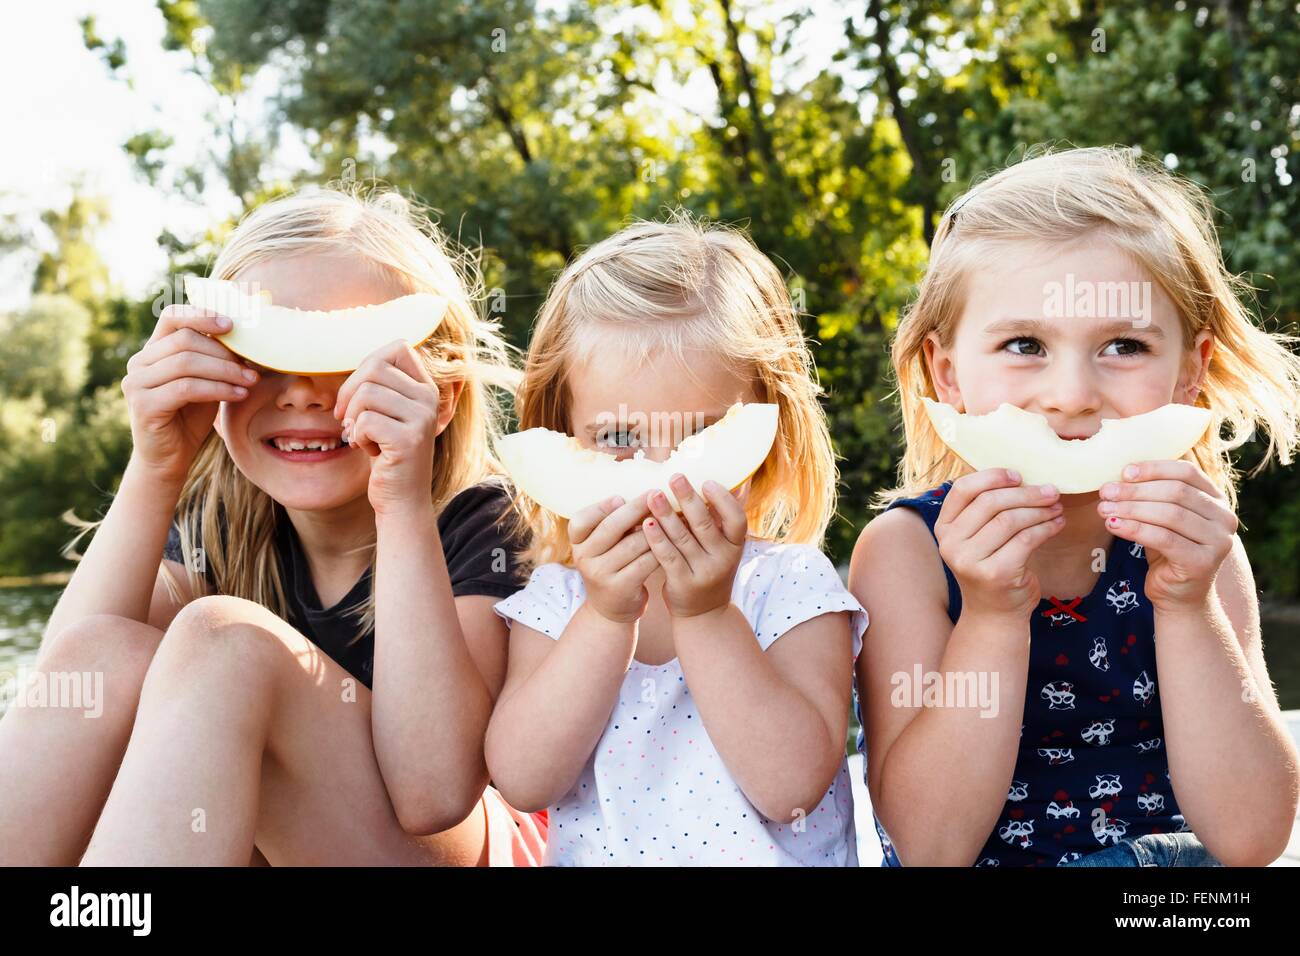 Porträt von drei jungen Schwestern hält lächelnd Melone vor Gesicht im park Stockfoto